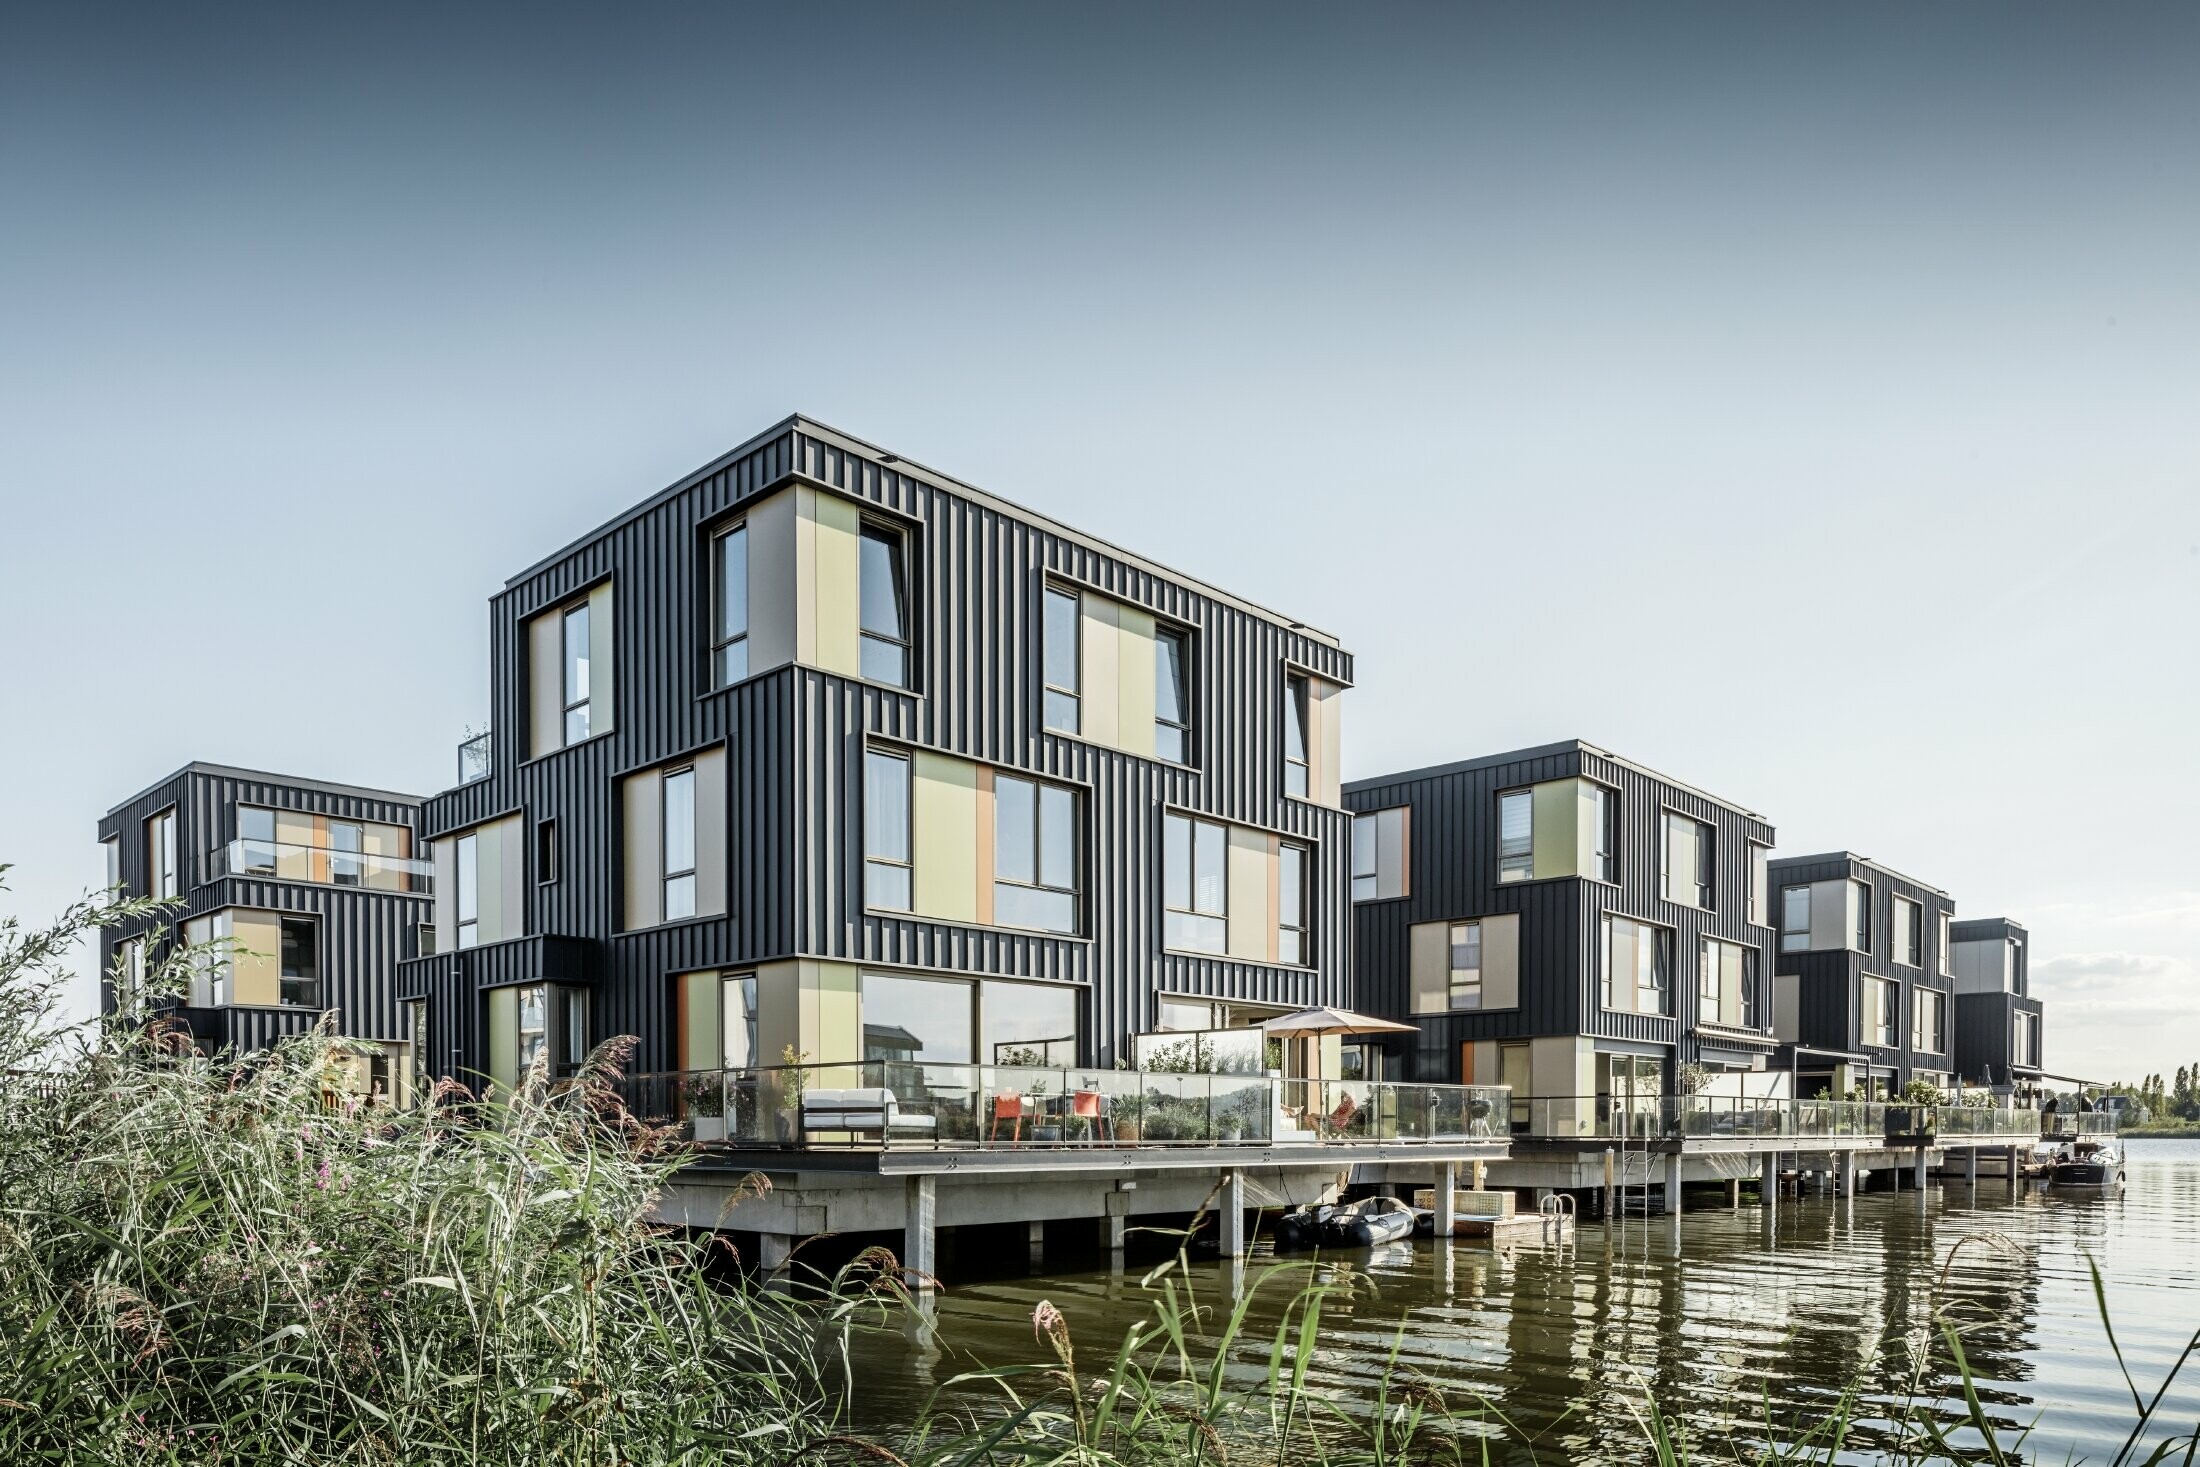 Nuova area abitativa con case bifamiliari sul lago ad Amsterdam. Le abitazioni sono state realizzate con Prefalz di PREFA in P.10 antracite.